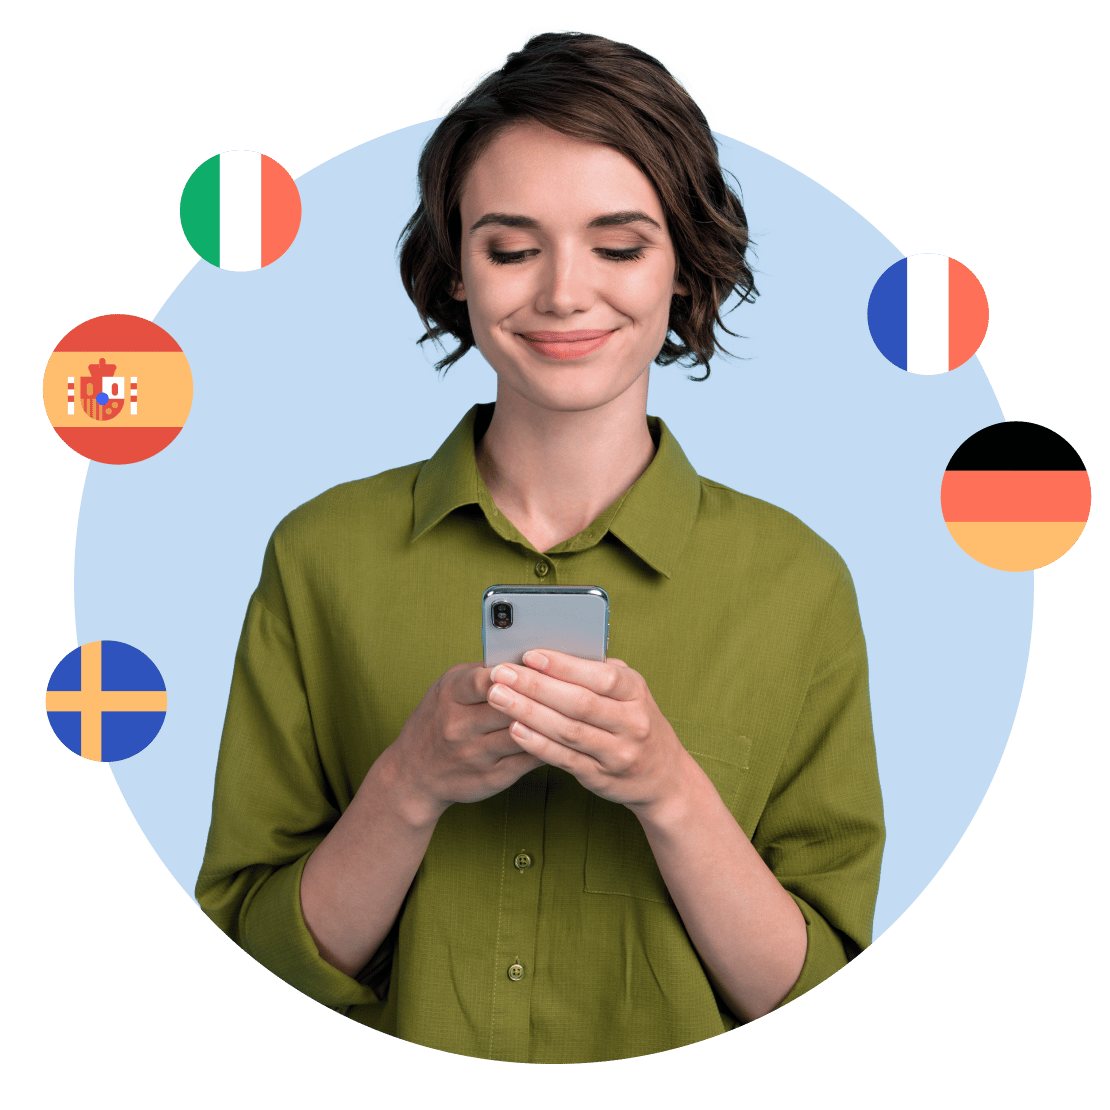 Женщина с радостью изучает языки на Duolingo с повышенным уровнем конфиденциальности NordVPN.